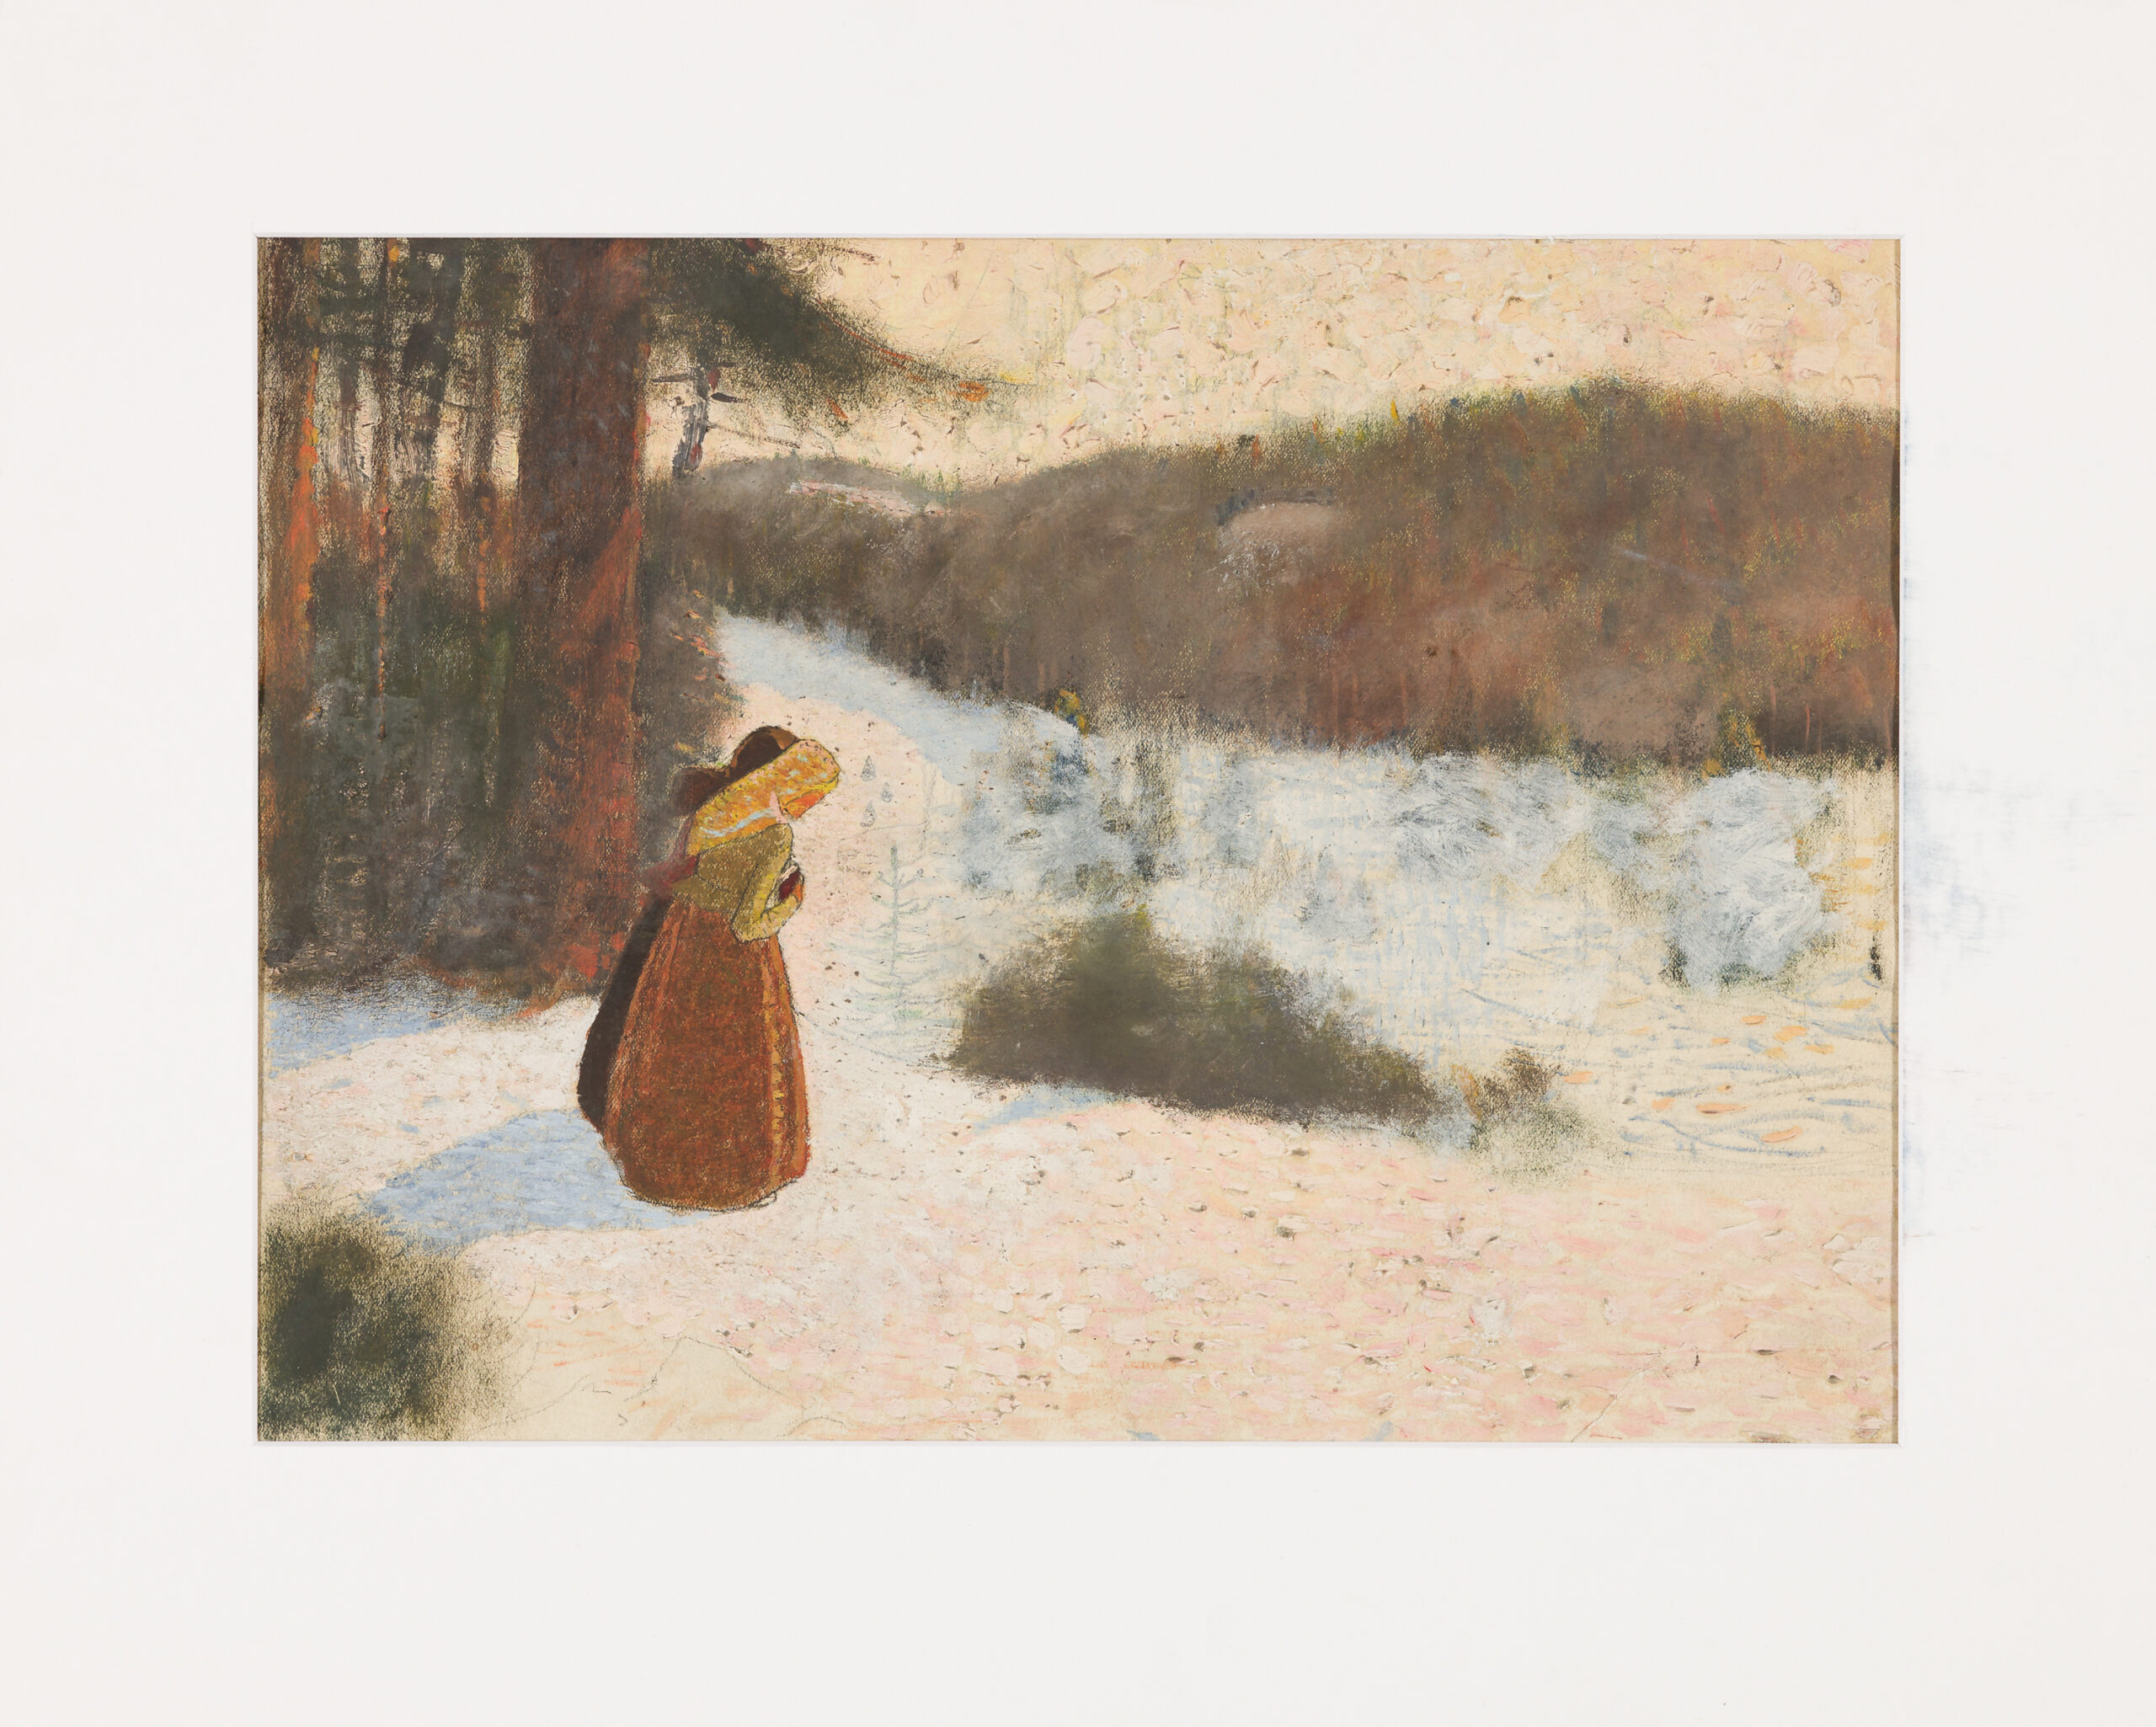 Krause Heinrich-Two women in a winter landscape